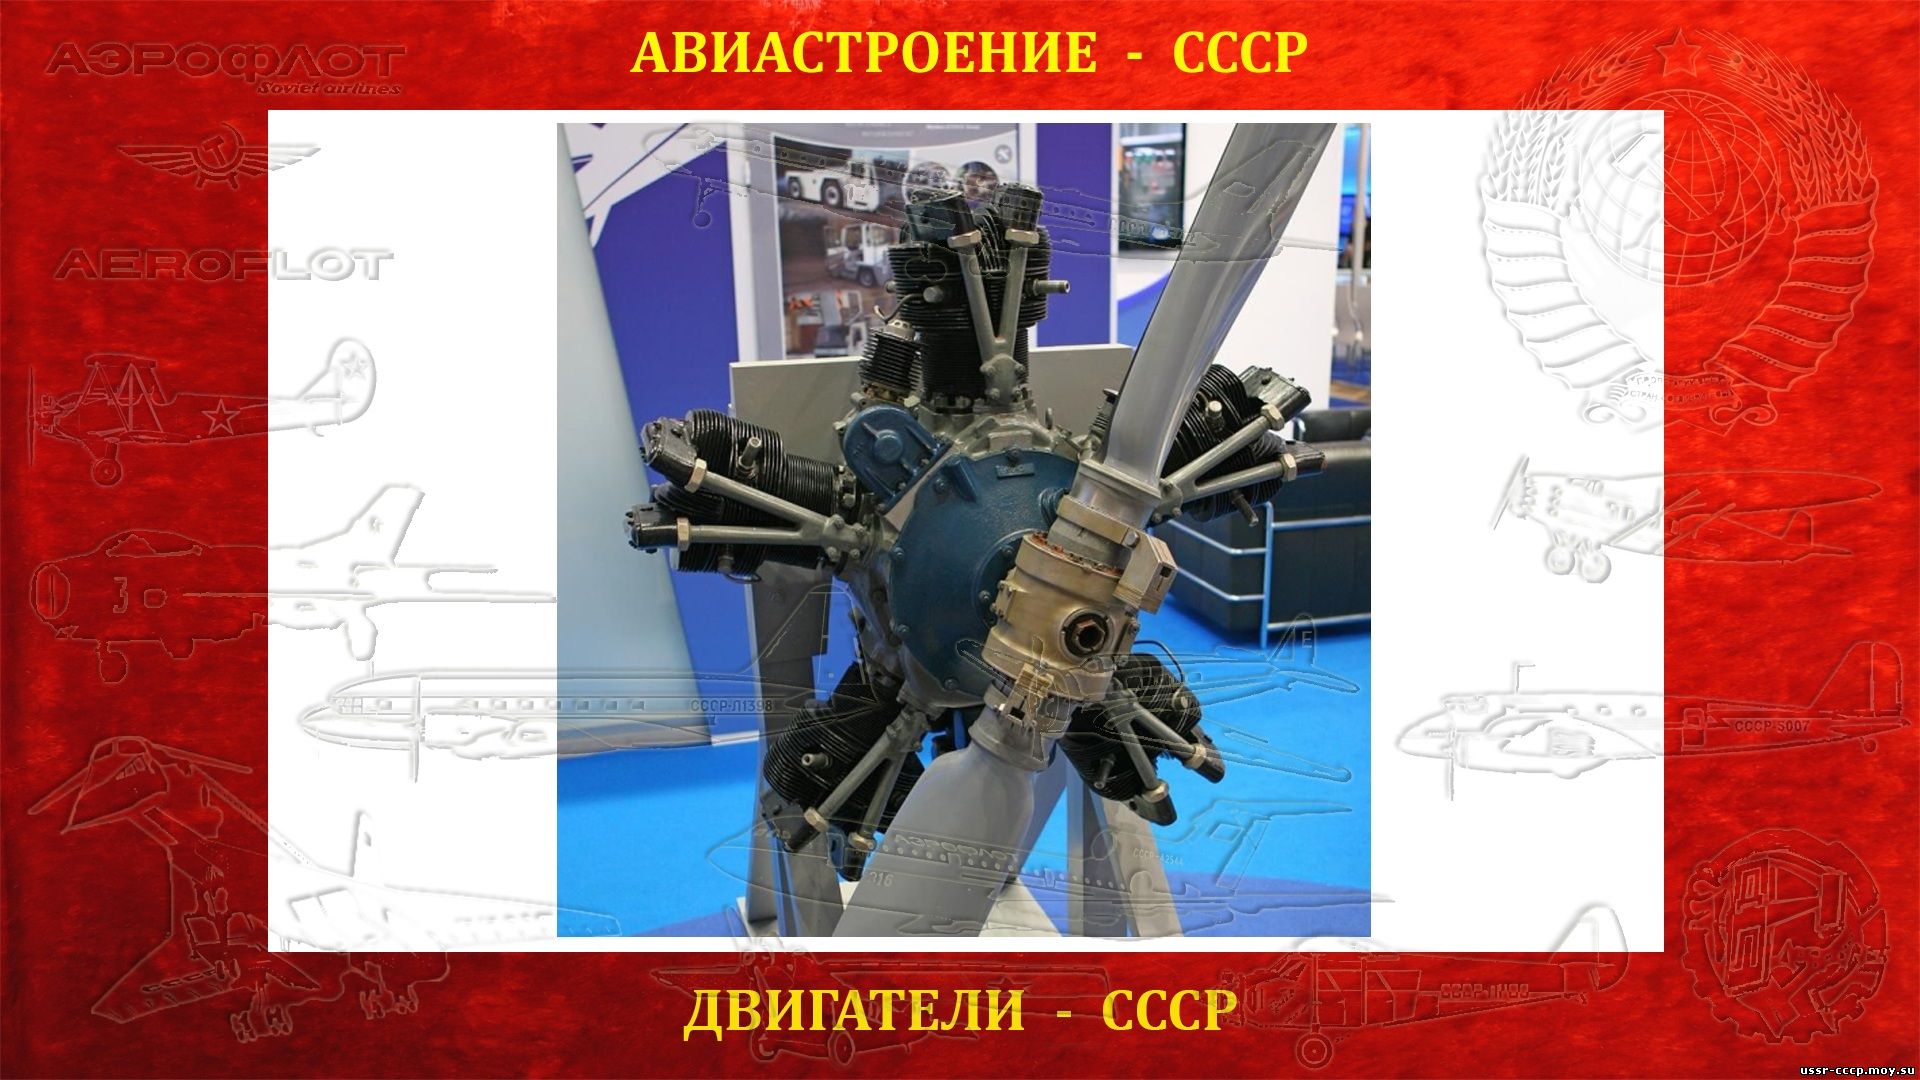 М-11 Поршневой авиационный двигатель (Полное повествование)